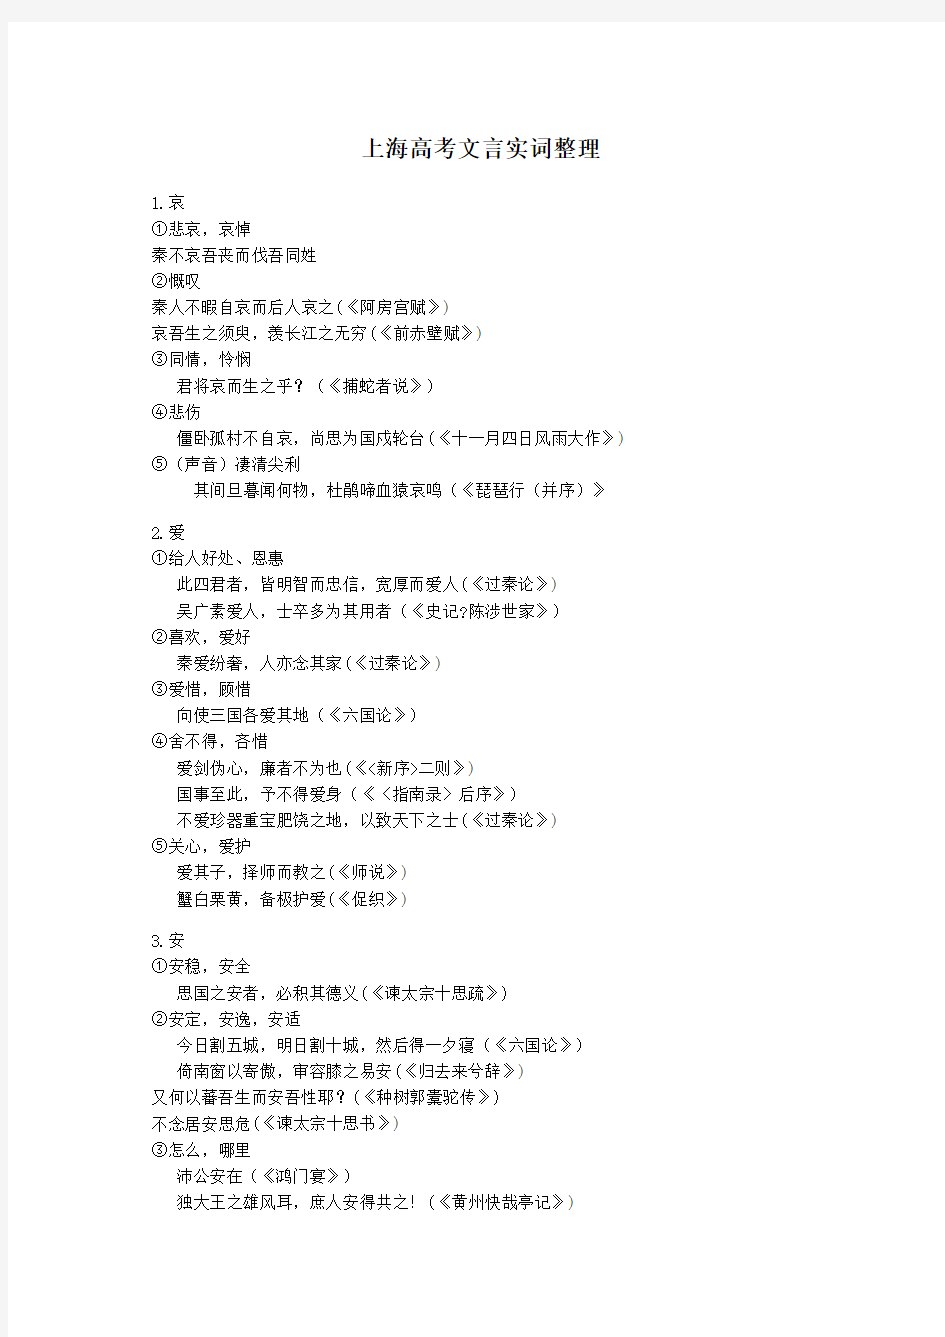 上海高考300文言实词整理(全)资料